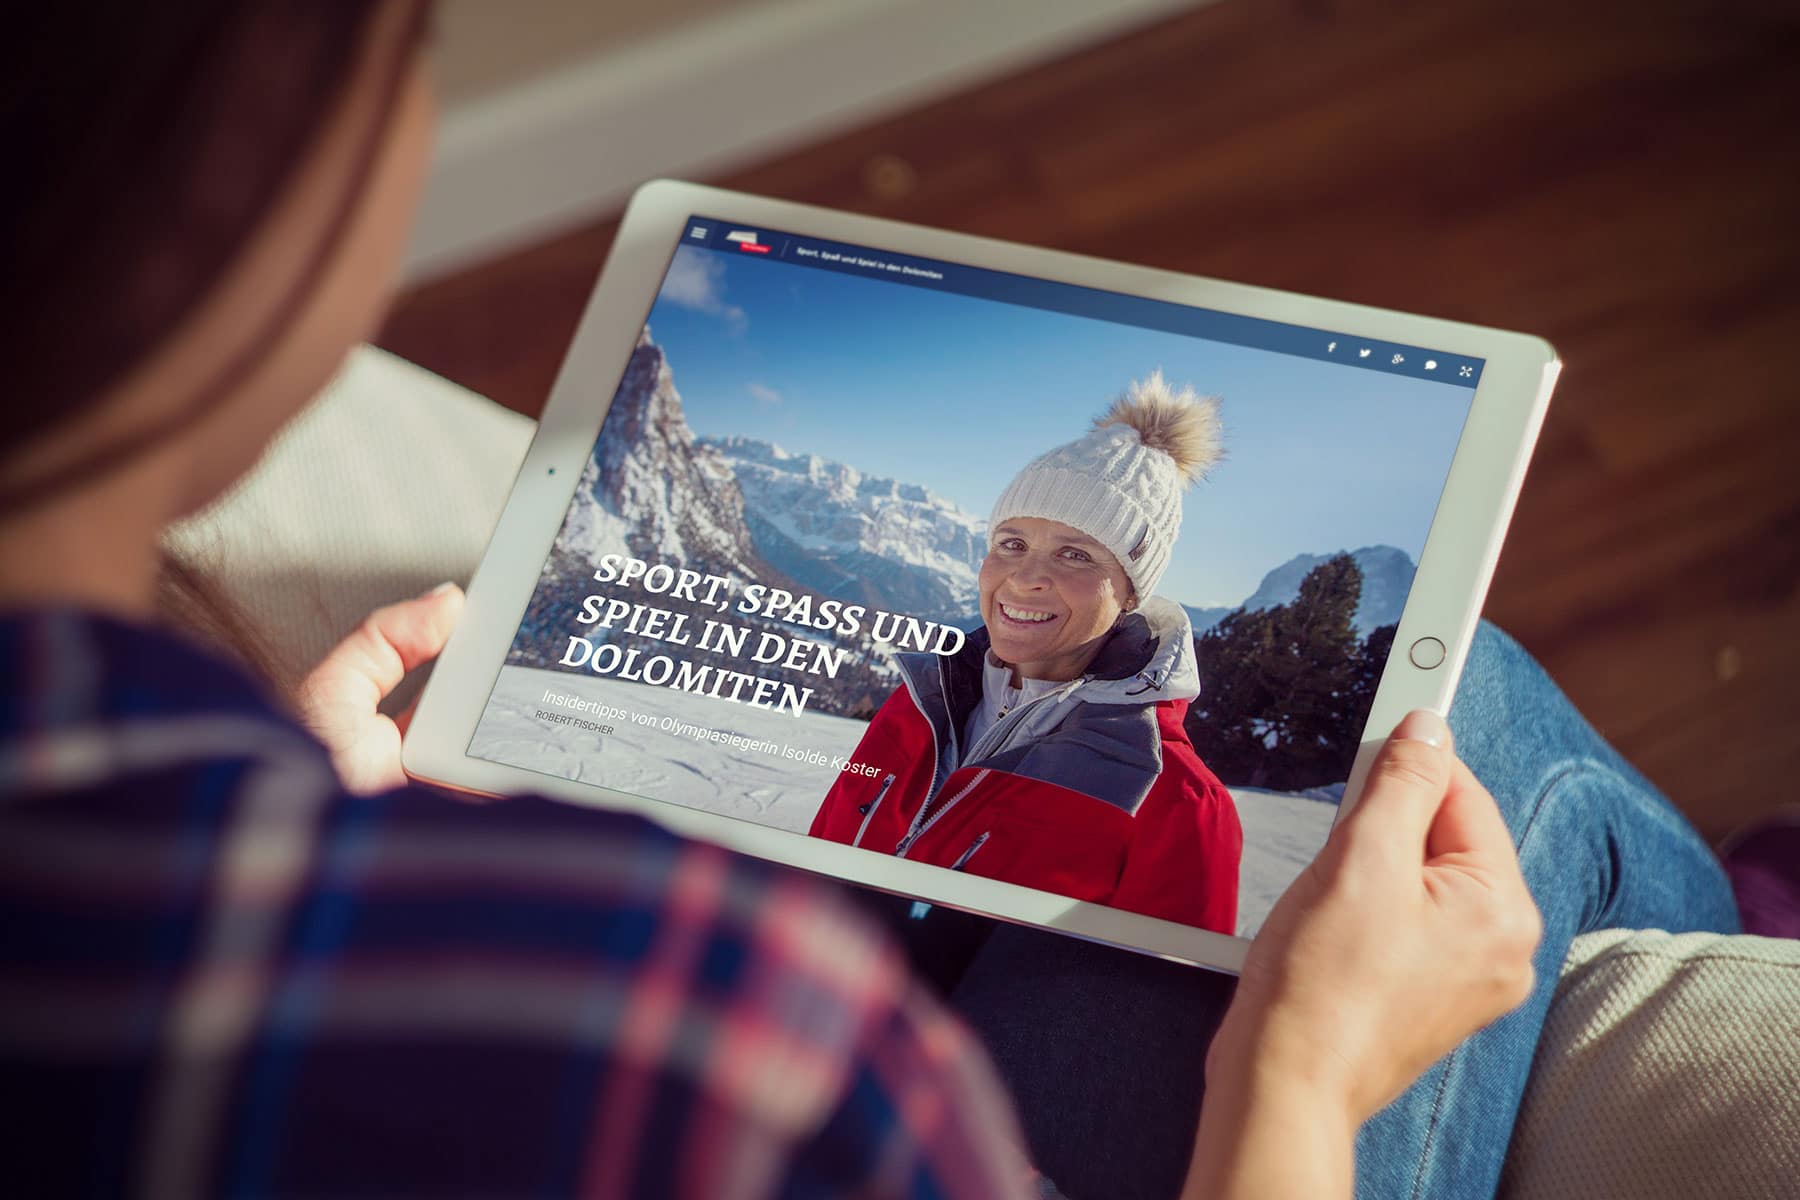 Dolomites Val Gardena Magazine - Start des digitalen Reisemagazins